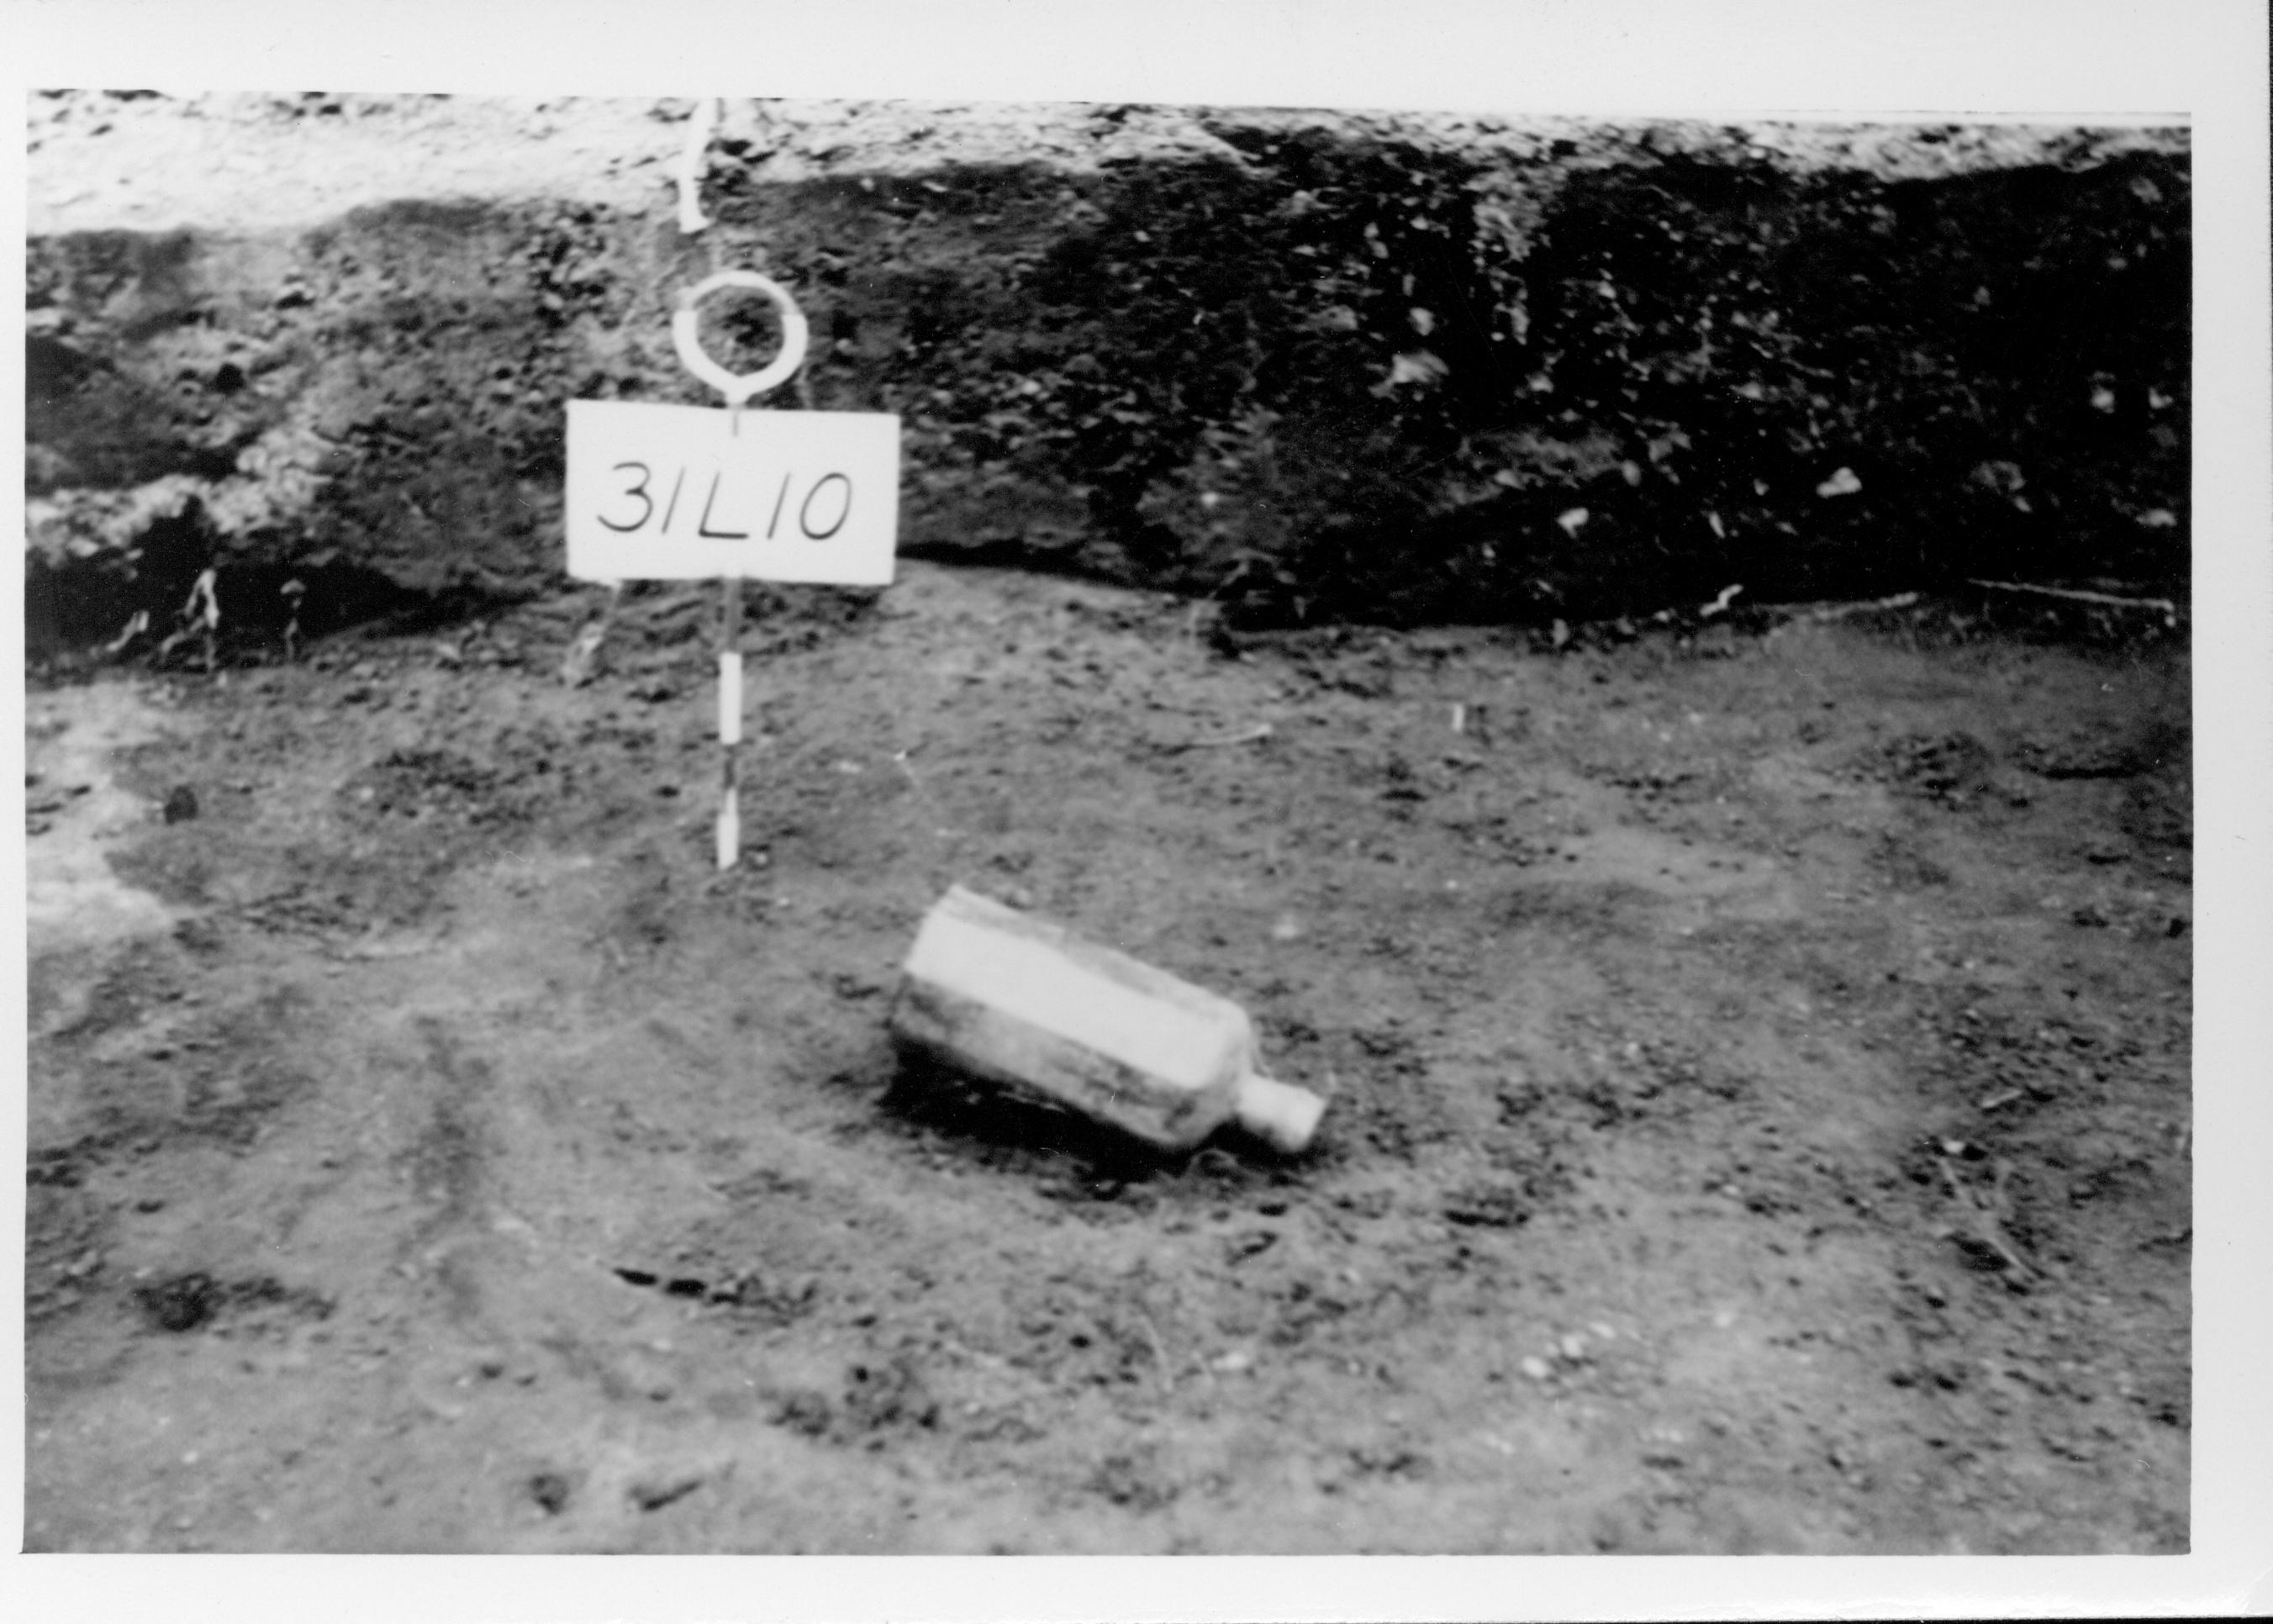 Richard Hagen 1950 - Archaeological excavation of Lincoln backyard Lincoln, Home, excavation, archaeology, Hagen